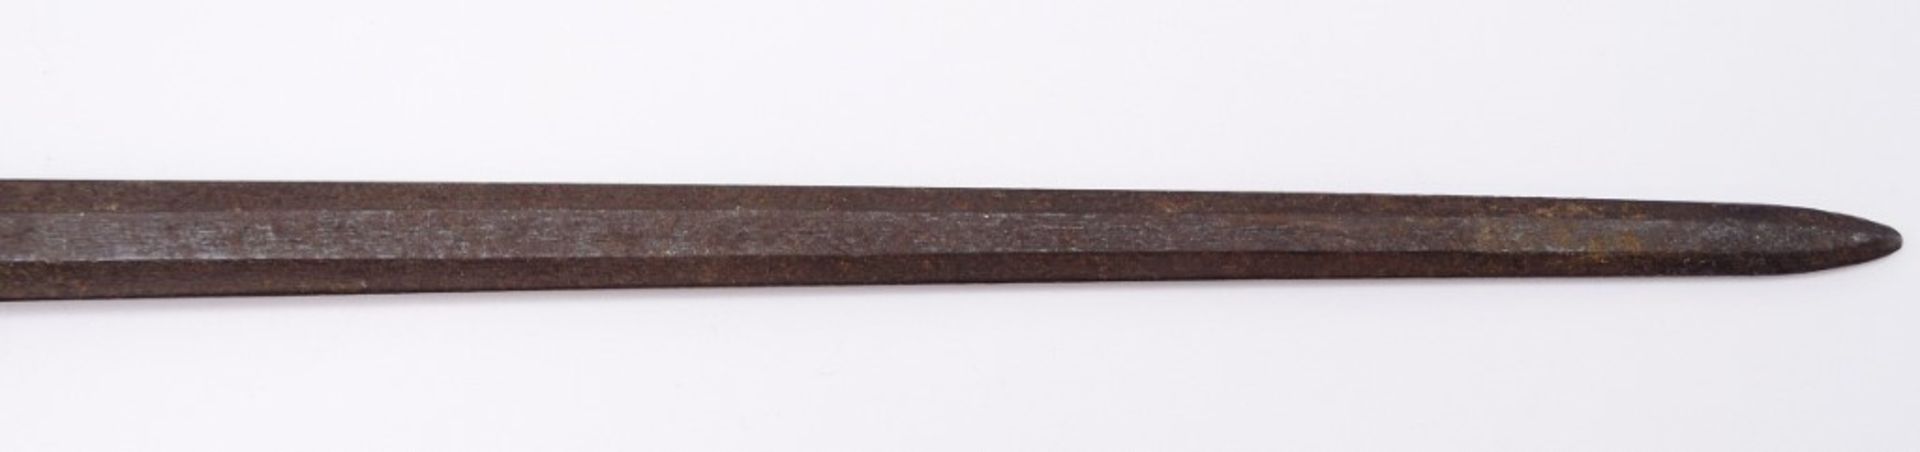 Altes Bajonett mit Holzgriff, L. 56, starke Altersspuren - Bild 6 aus 6